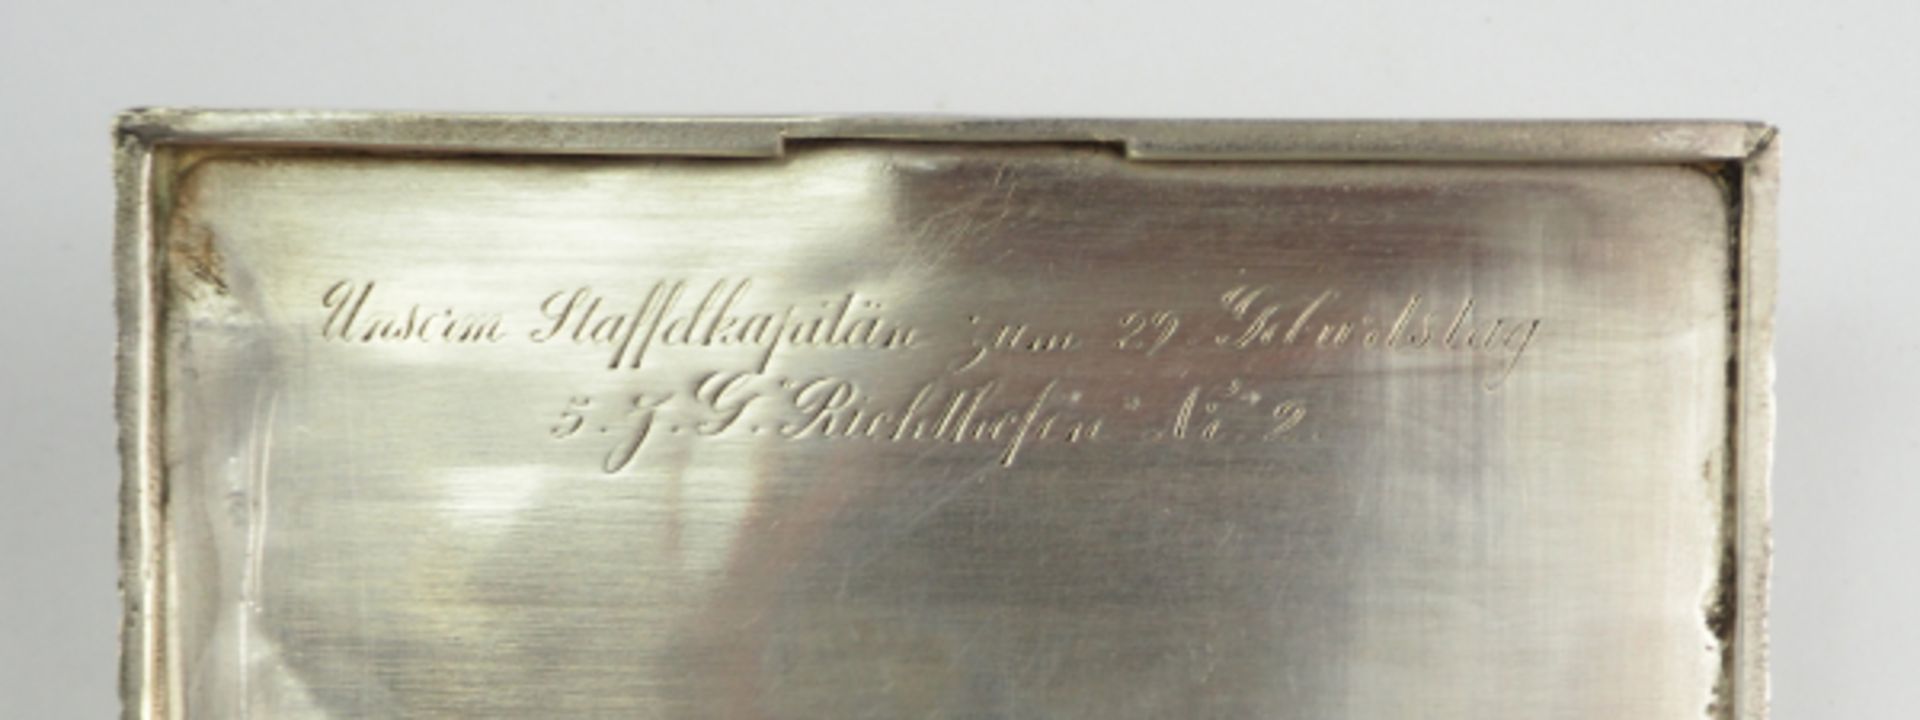 Geschenk Zigarettenetui - 5. J. G. "Richthofen" Nr. 2.Silbernes Etui, im Deckel gravierte Widmung "